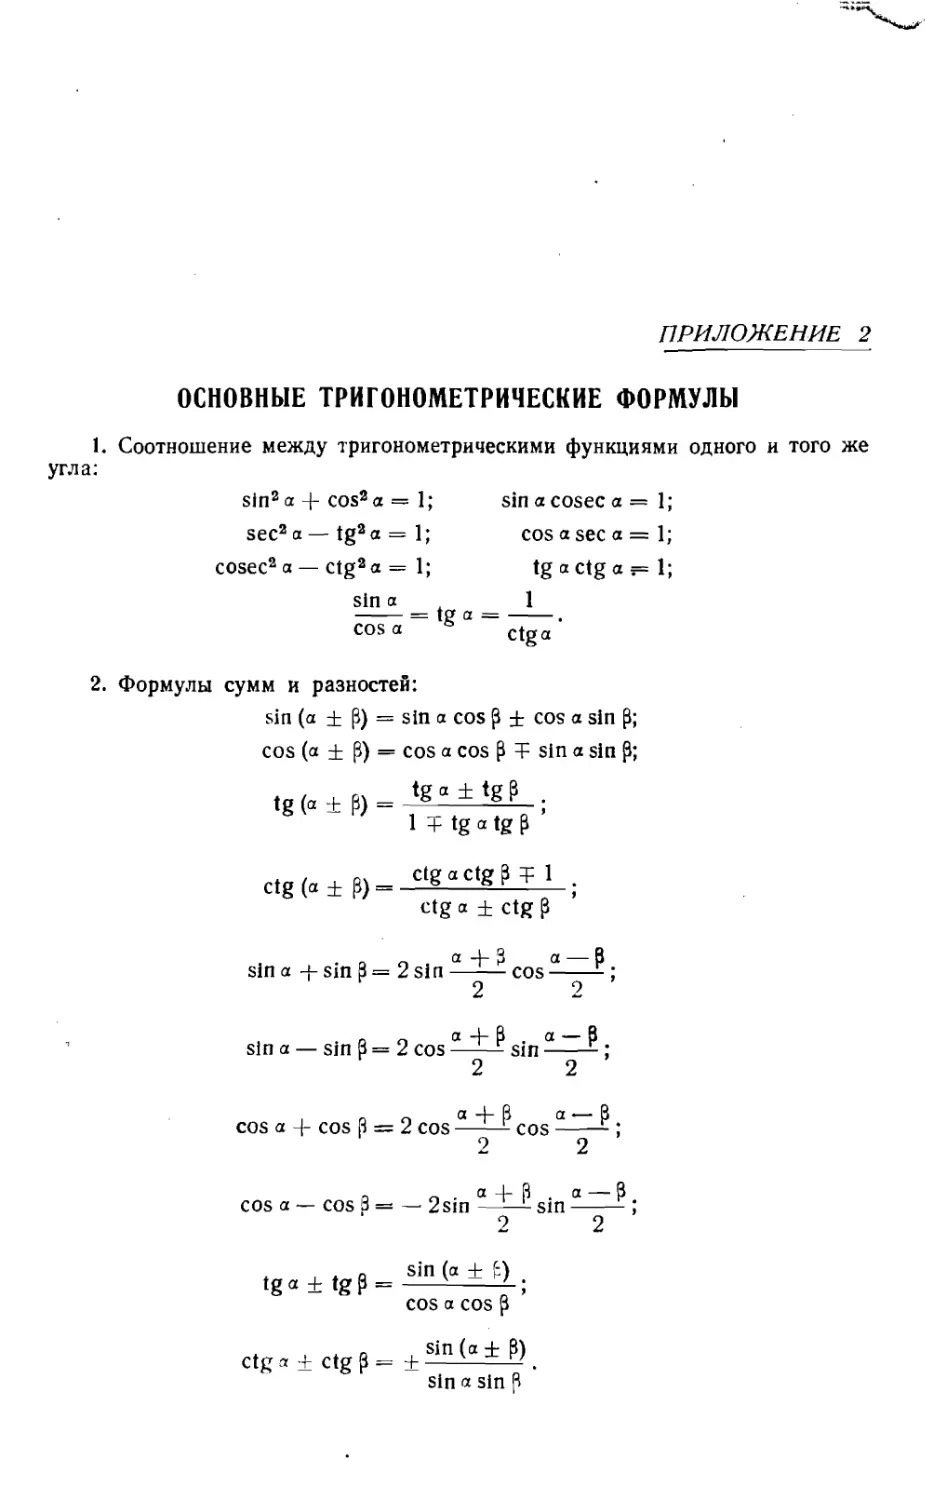 Приложение 2. Основные тригонометрические формулы